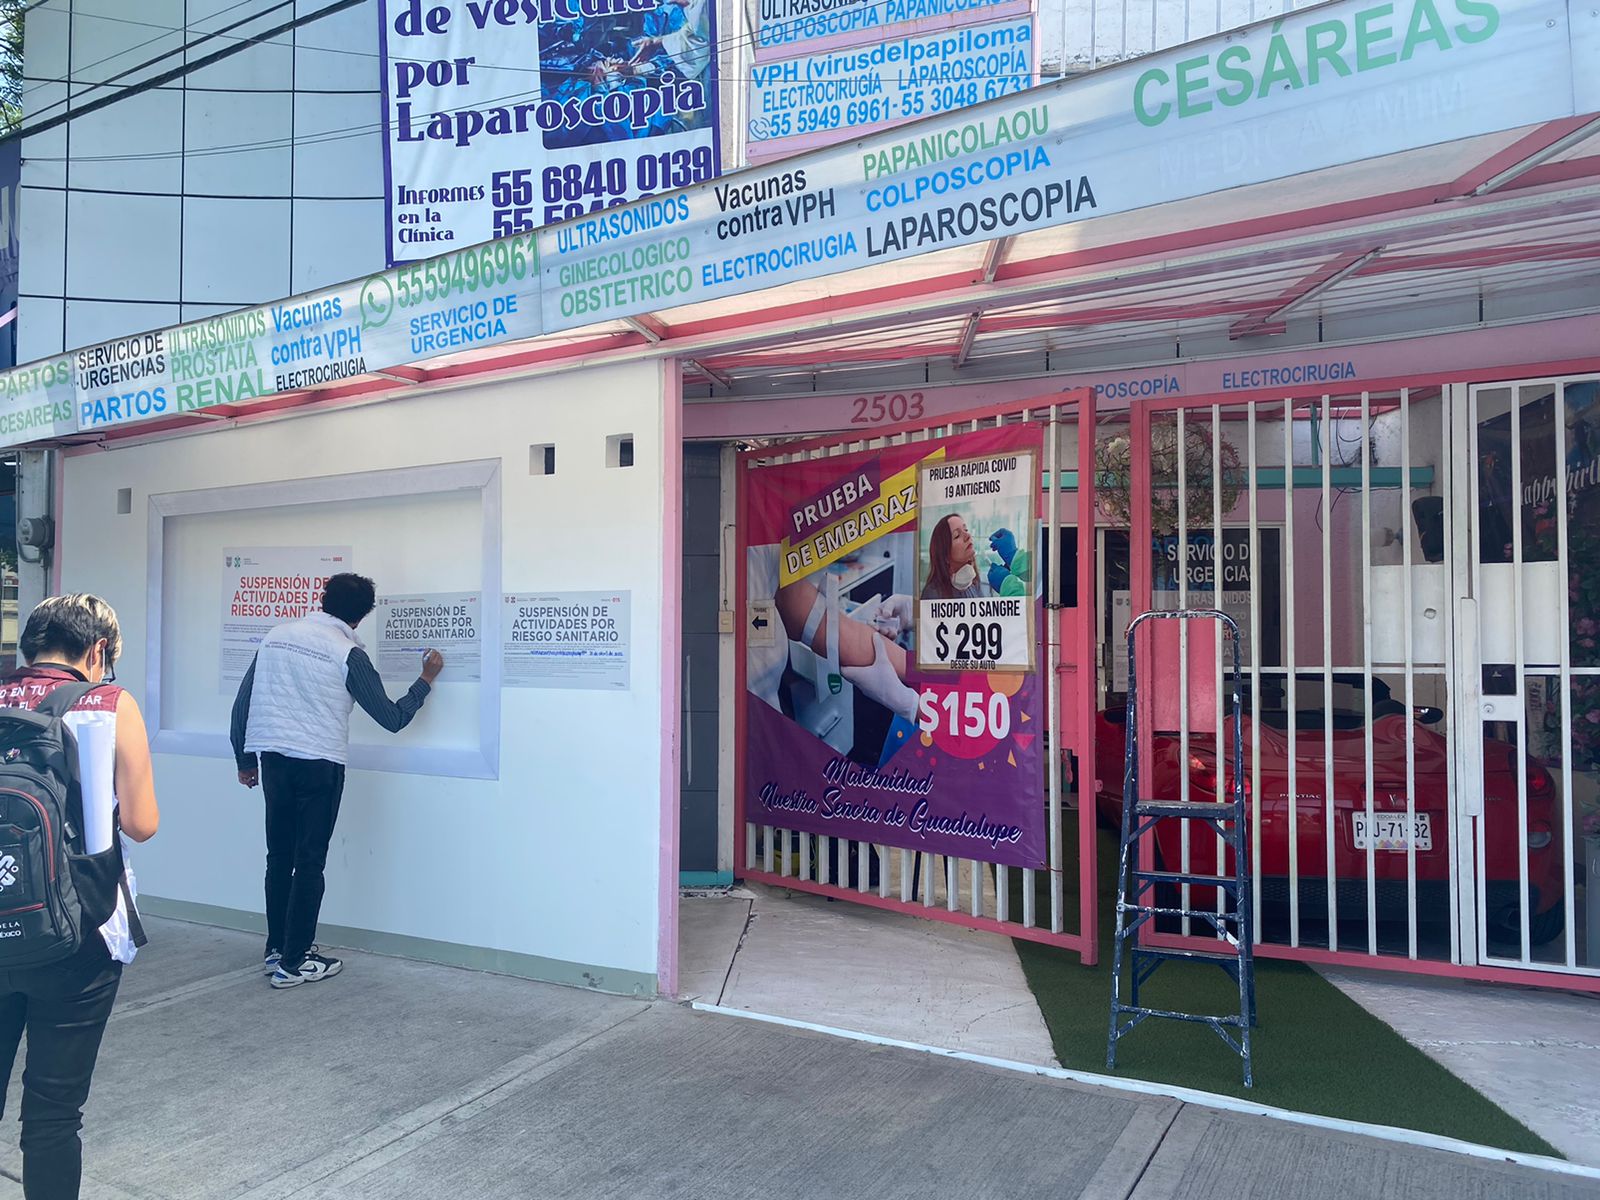 Suspende AGEPSA clínica “patito” en Iztapalapa por irregularidades